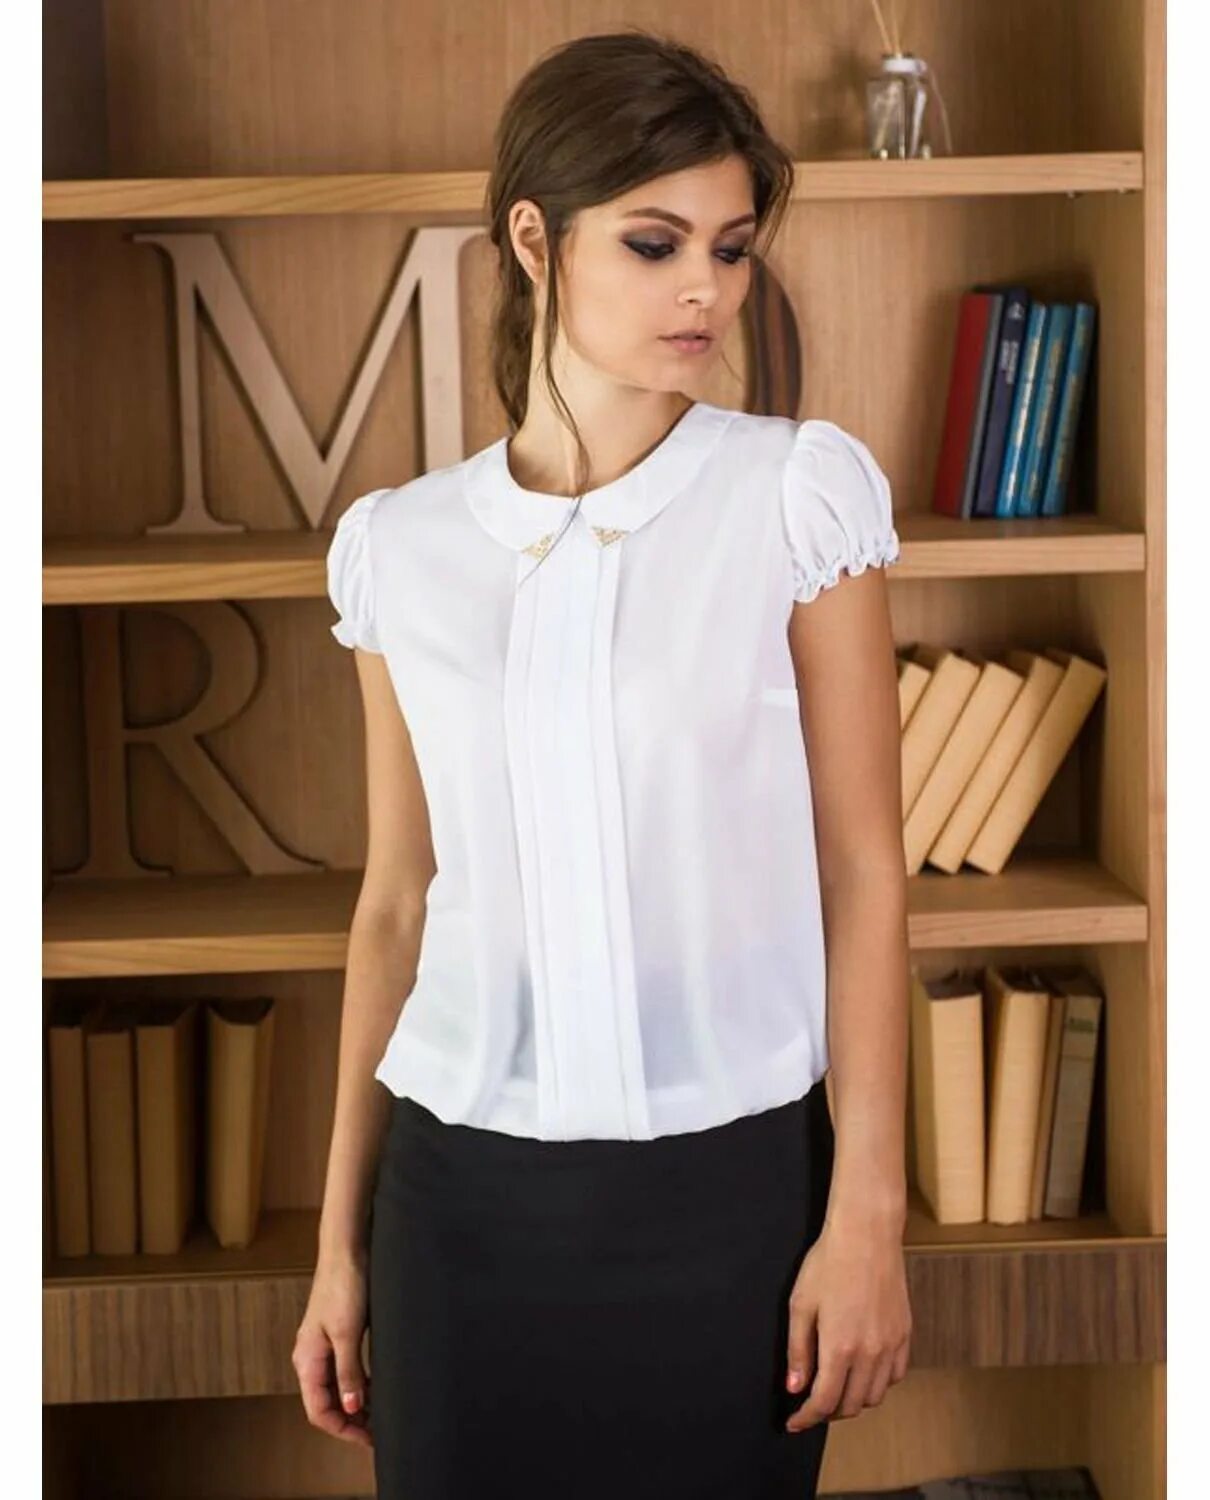 Офисная блузка купить. Блузка с коротким рукавом. Блузка женская с коротким рукавом. Белая блузка. Фасон блузок с коротким рукавом.